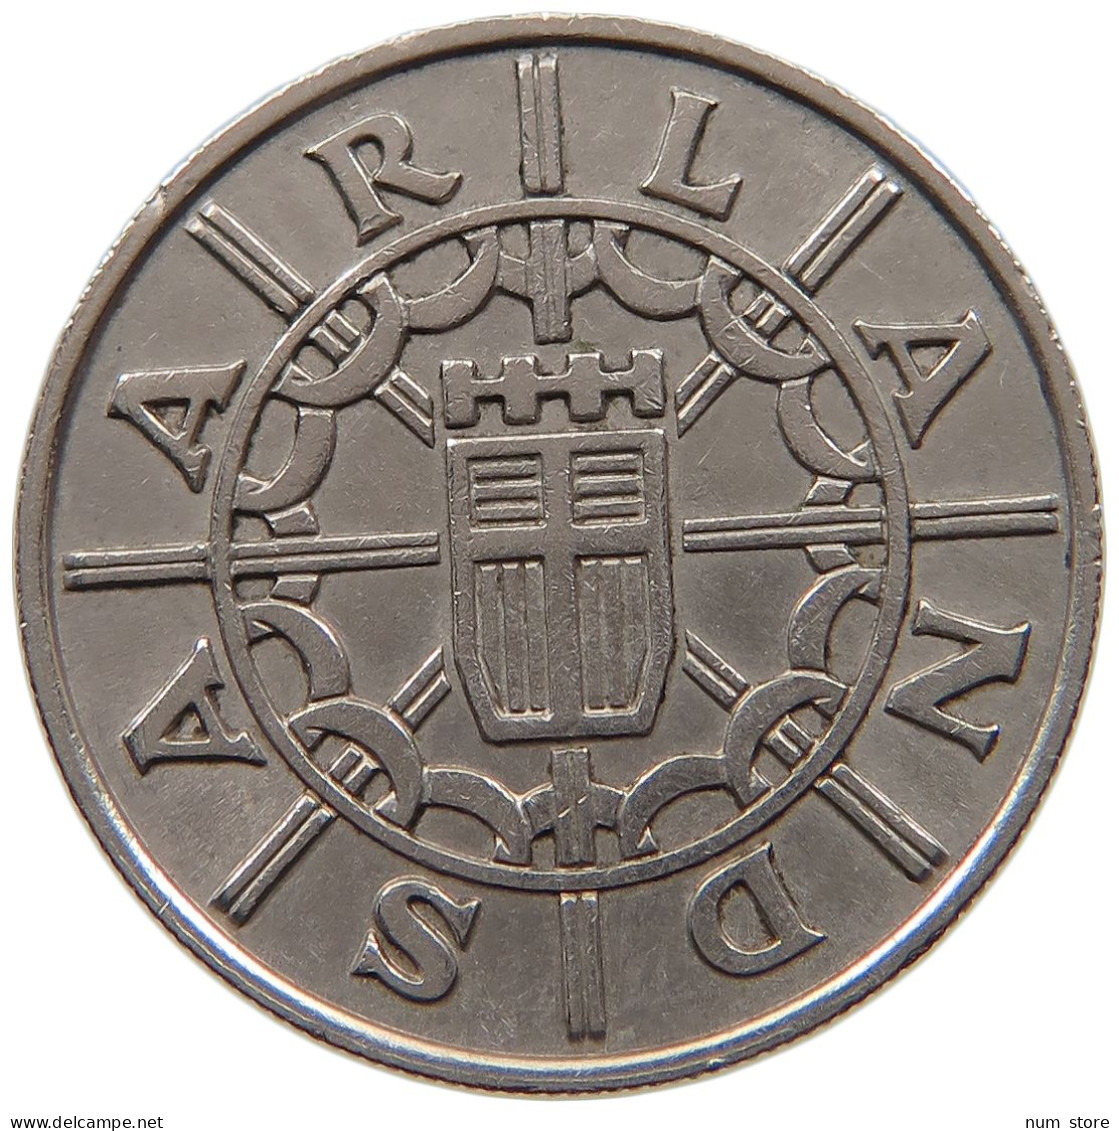 SAARLAND 100 FRANKEN 1955  #a045 1133 - 100 Franken